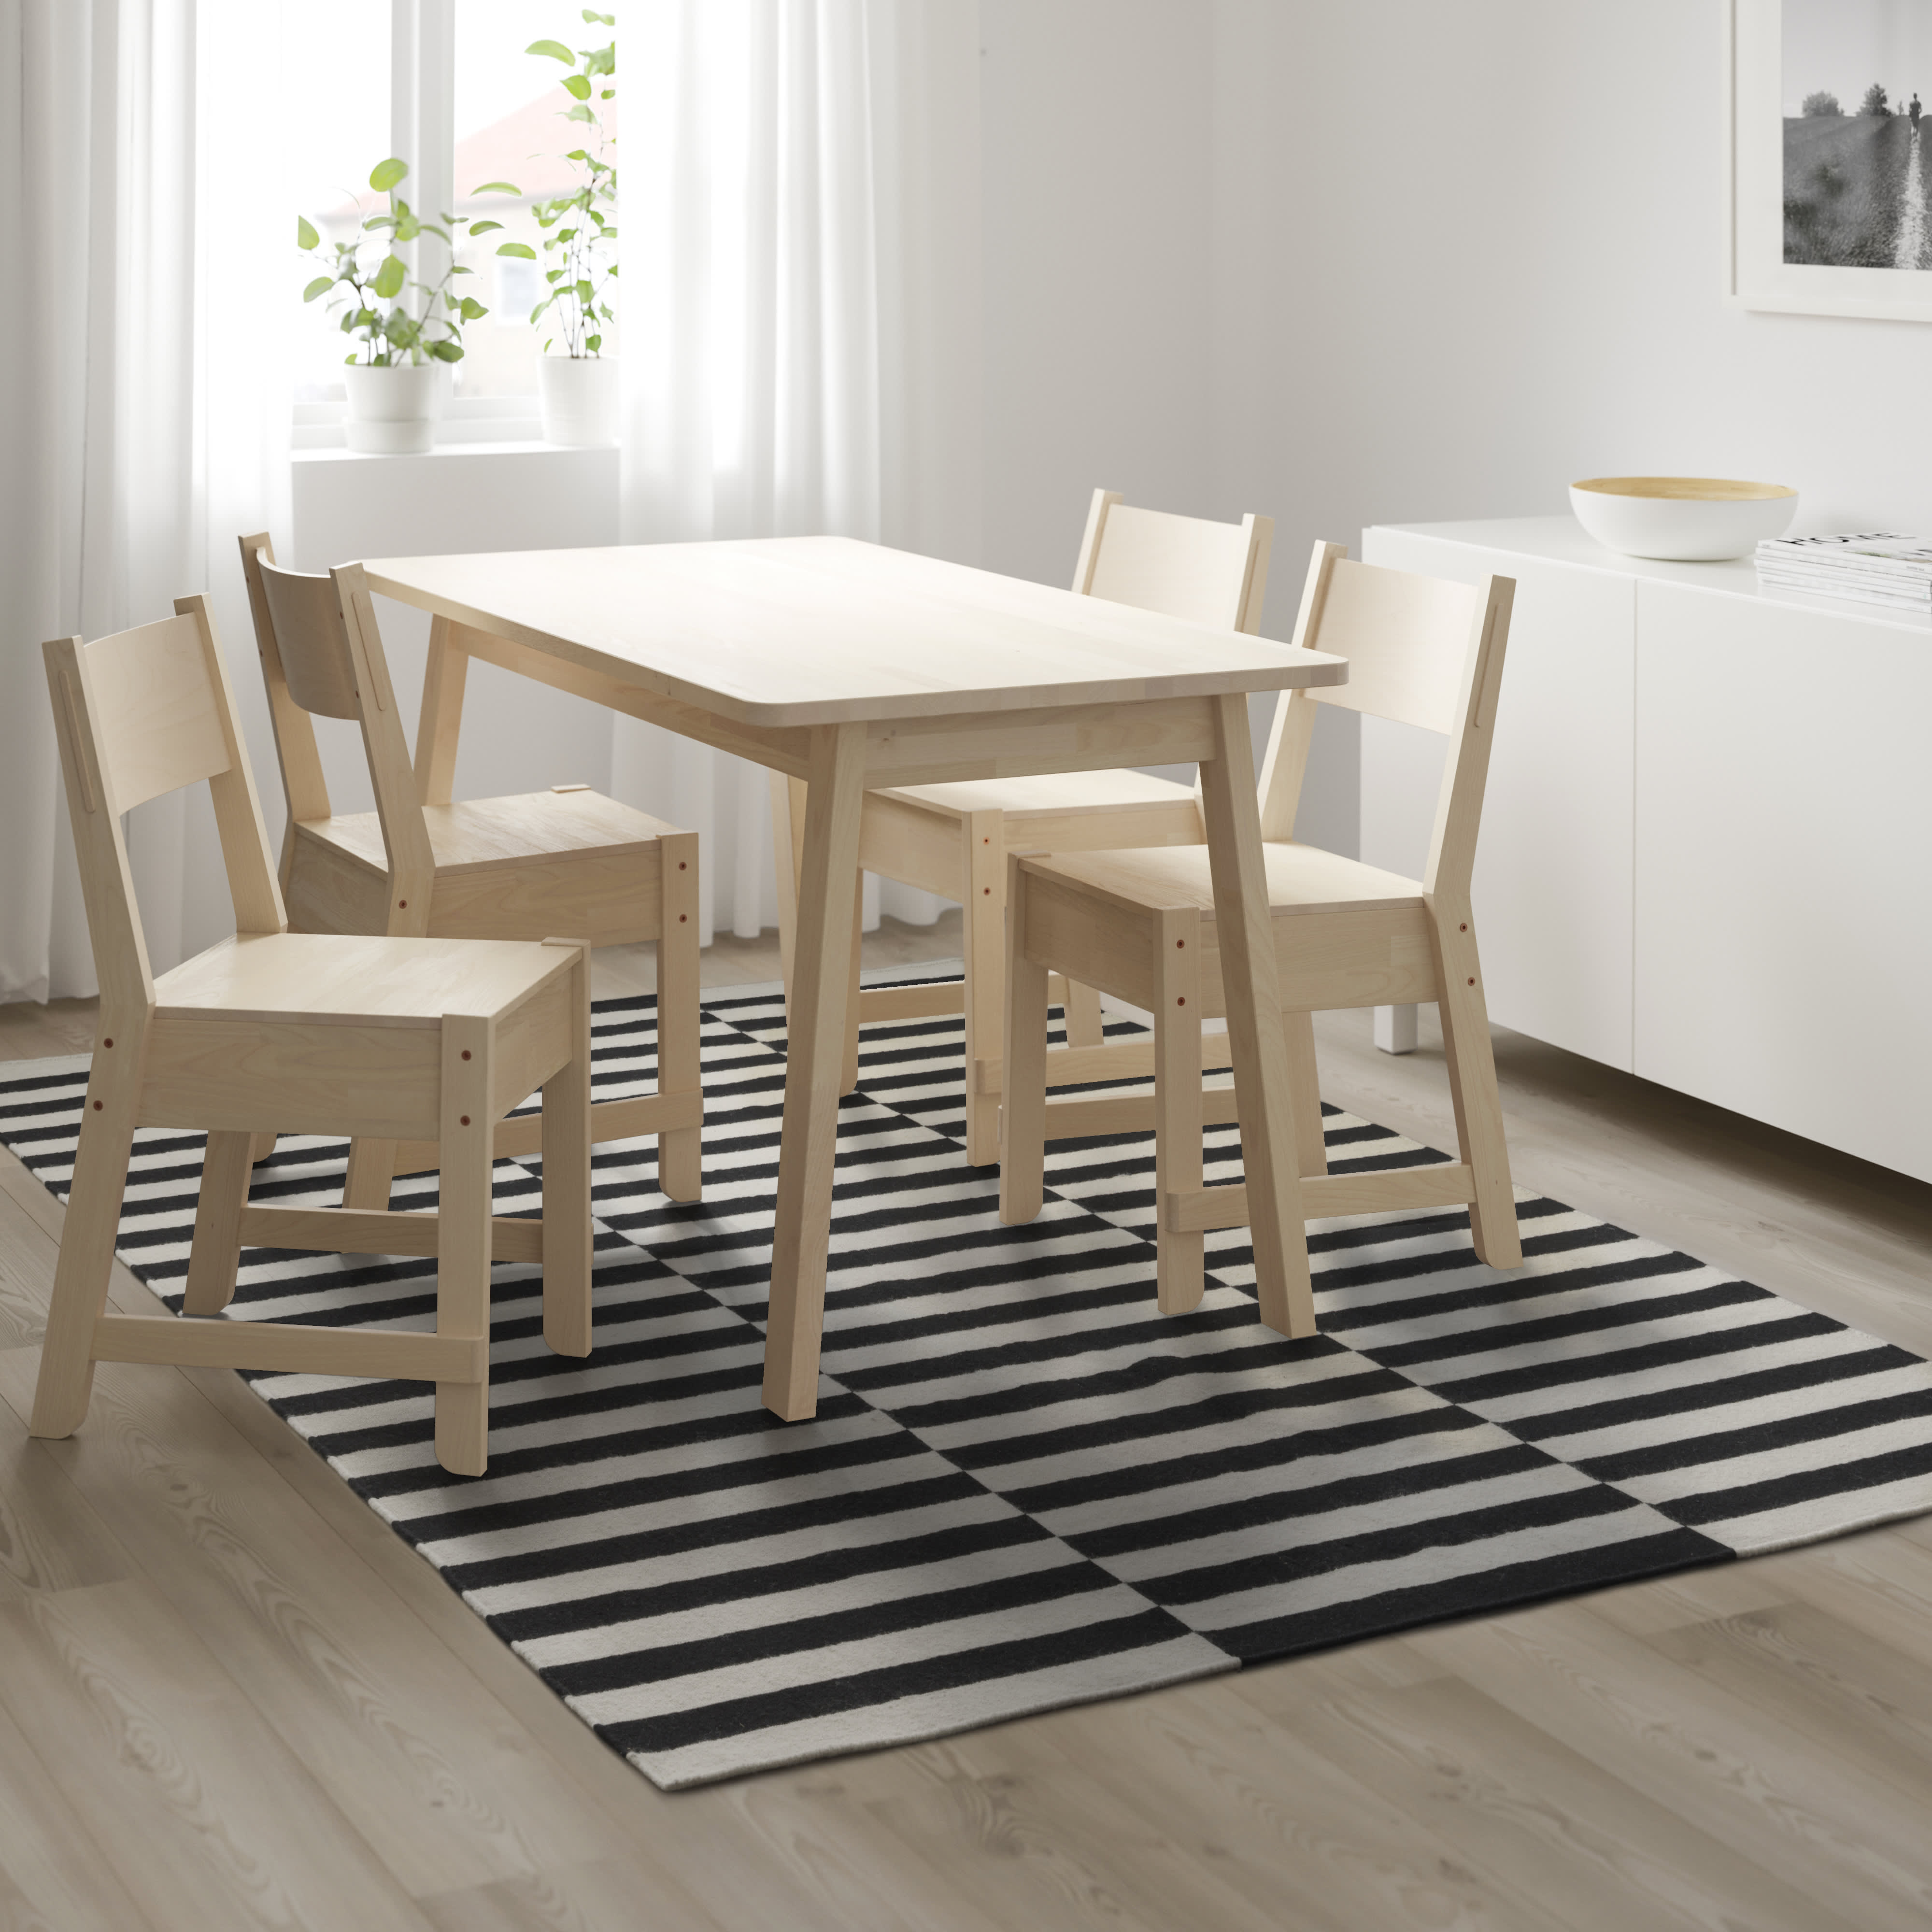 Wet en regelgeving Buiten adem ophouden IKEA's Top Scandinavian Design Home Products | Apartment Therapy